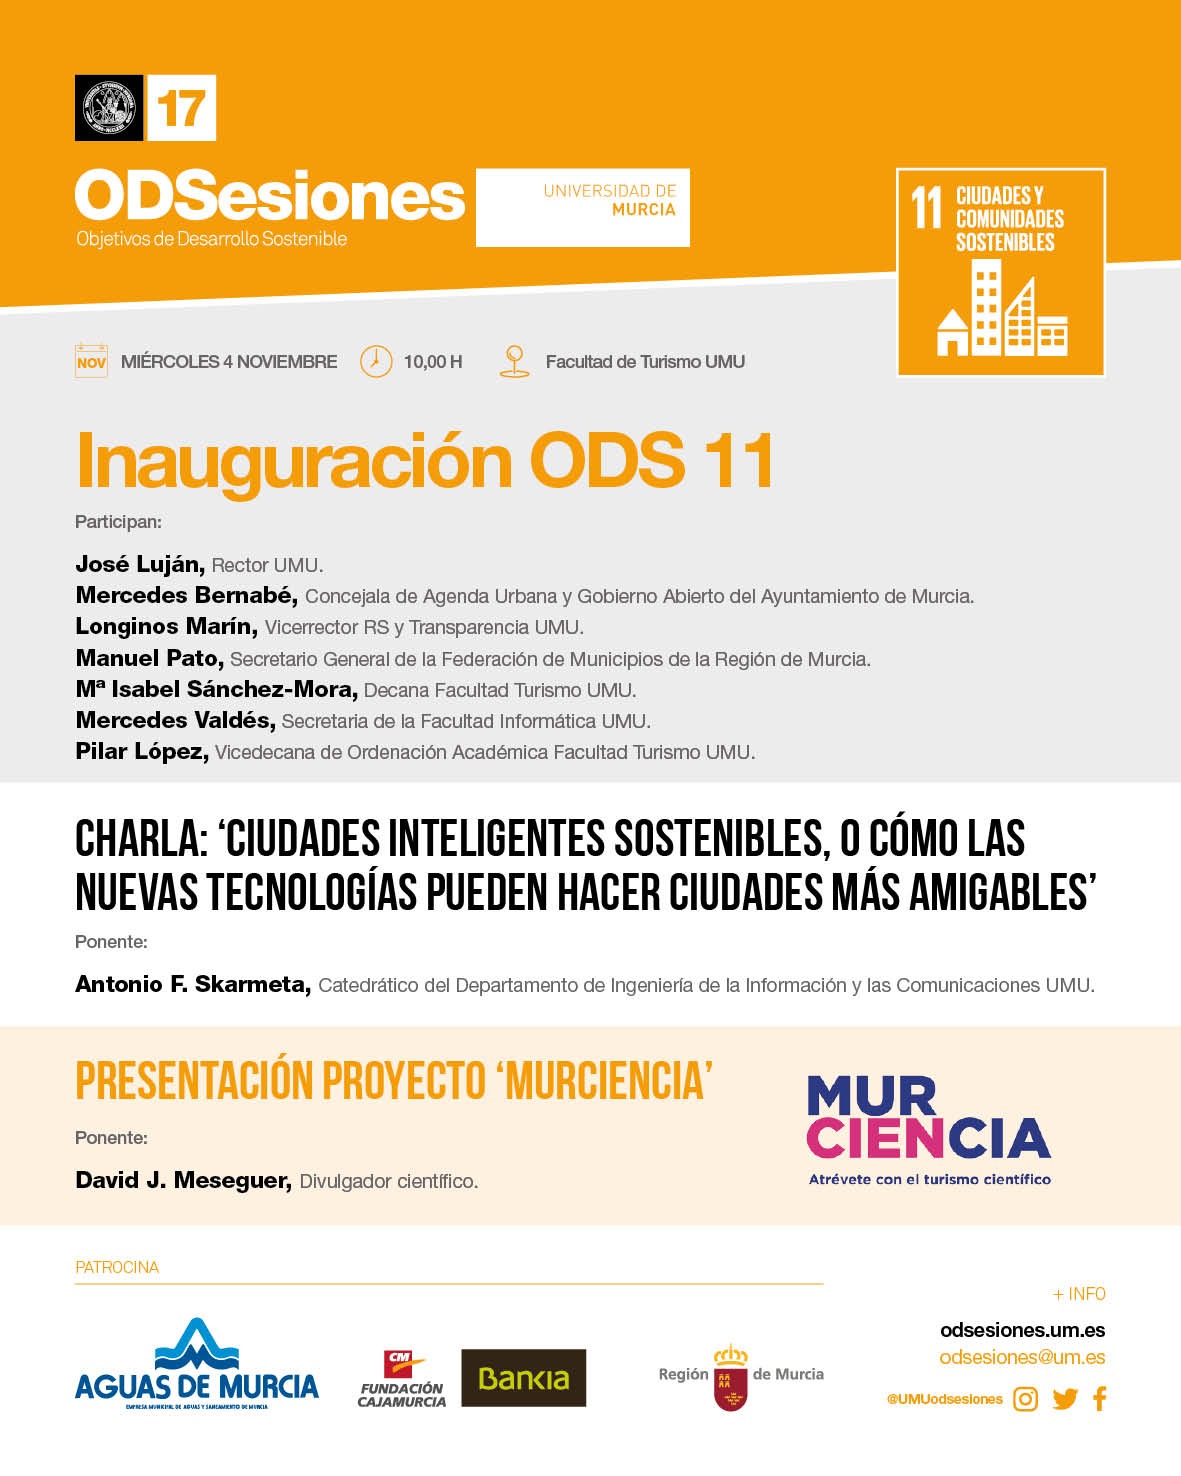 Inauguración del ODS 11 de ODSesiones en la facultad de Turismo de la Universidad de Murcia